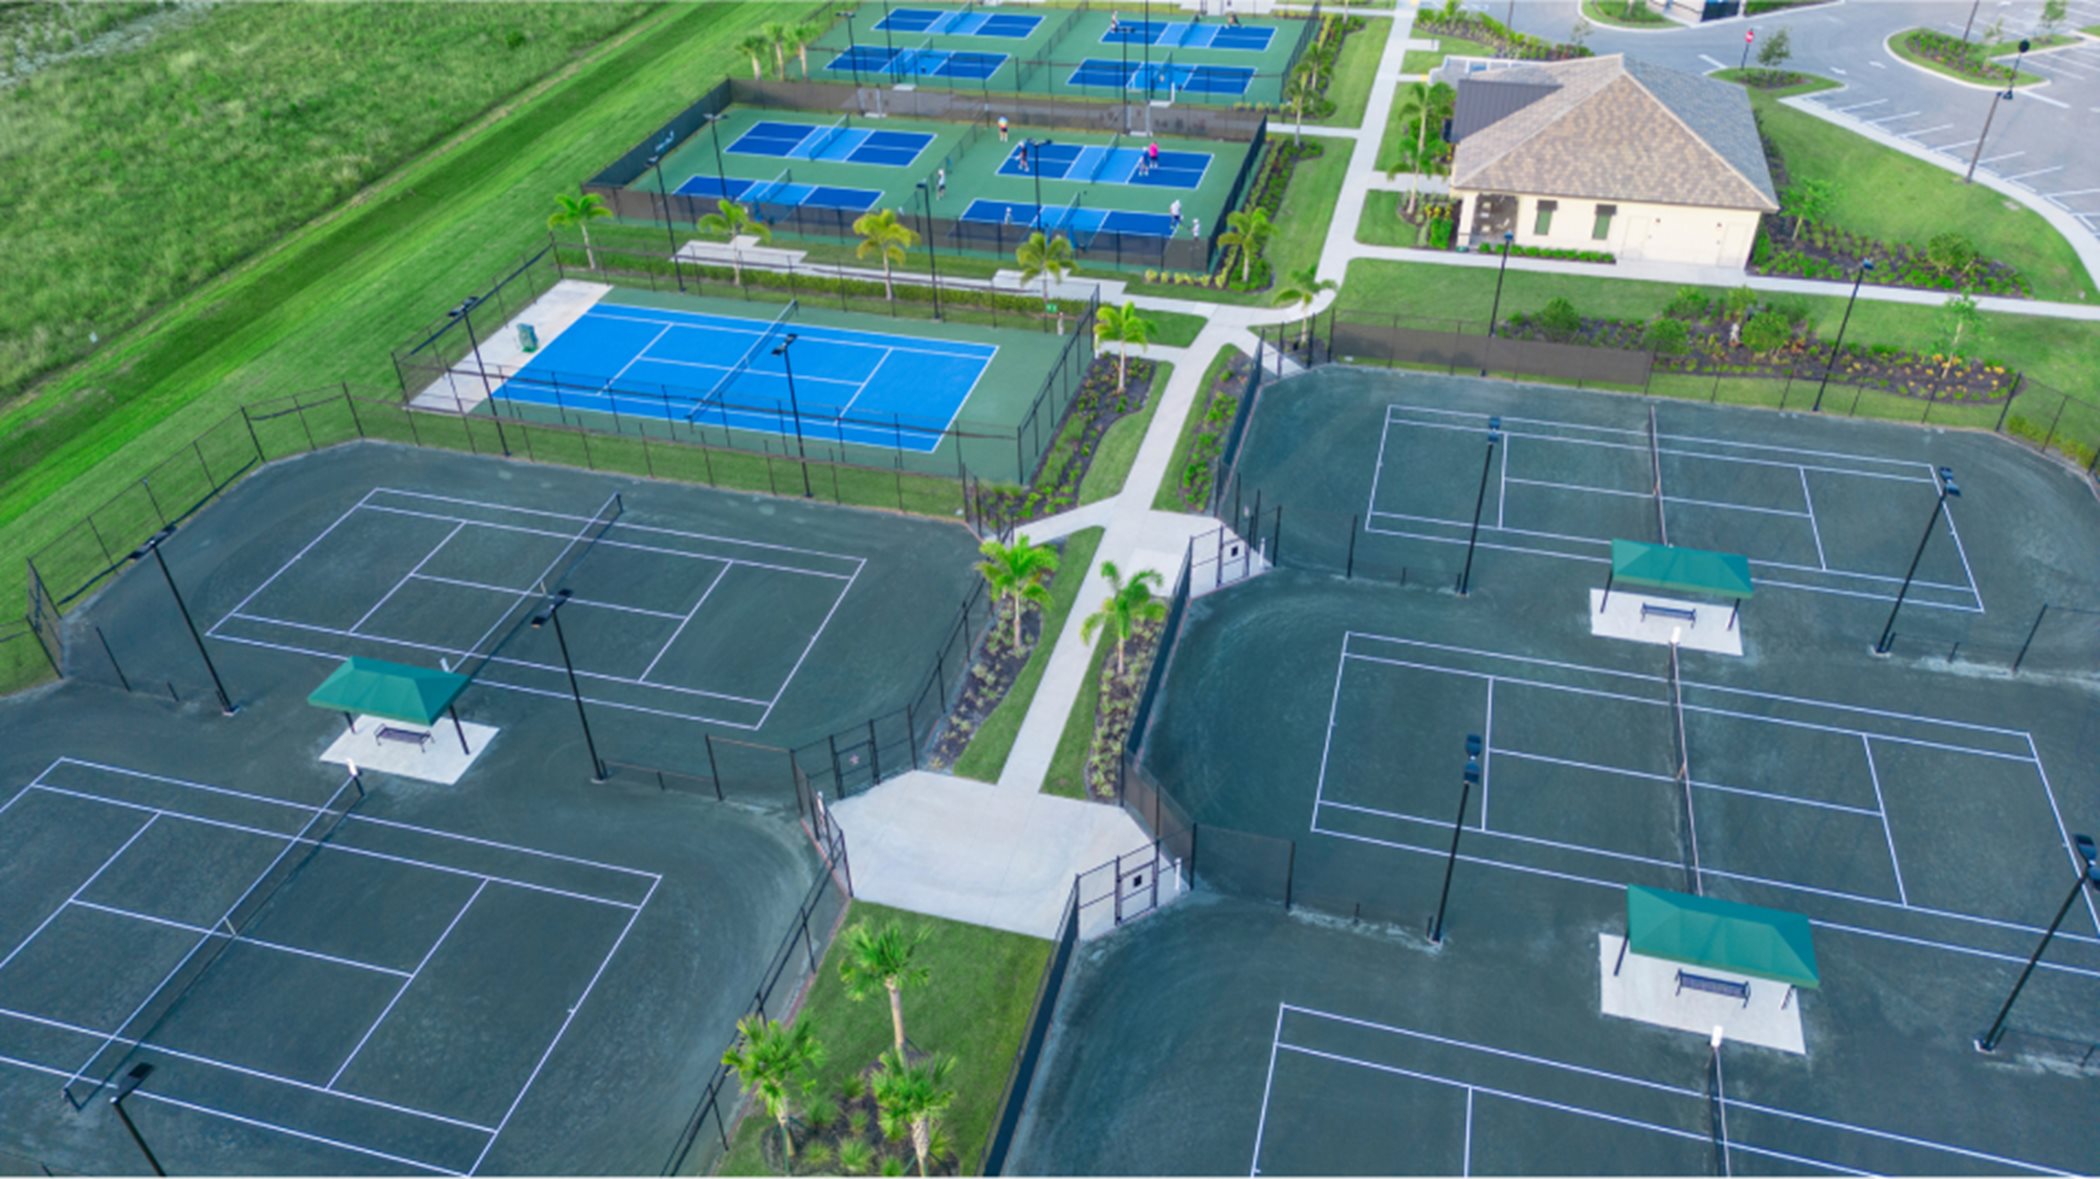 Verdana Village outdoor Tennis courts